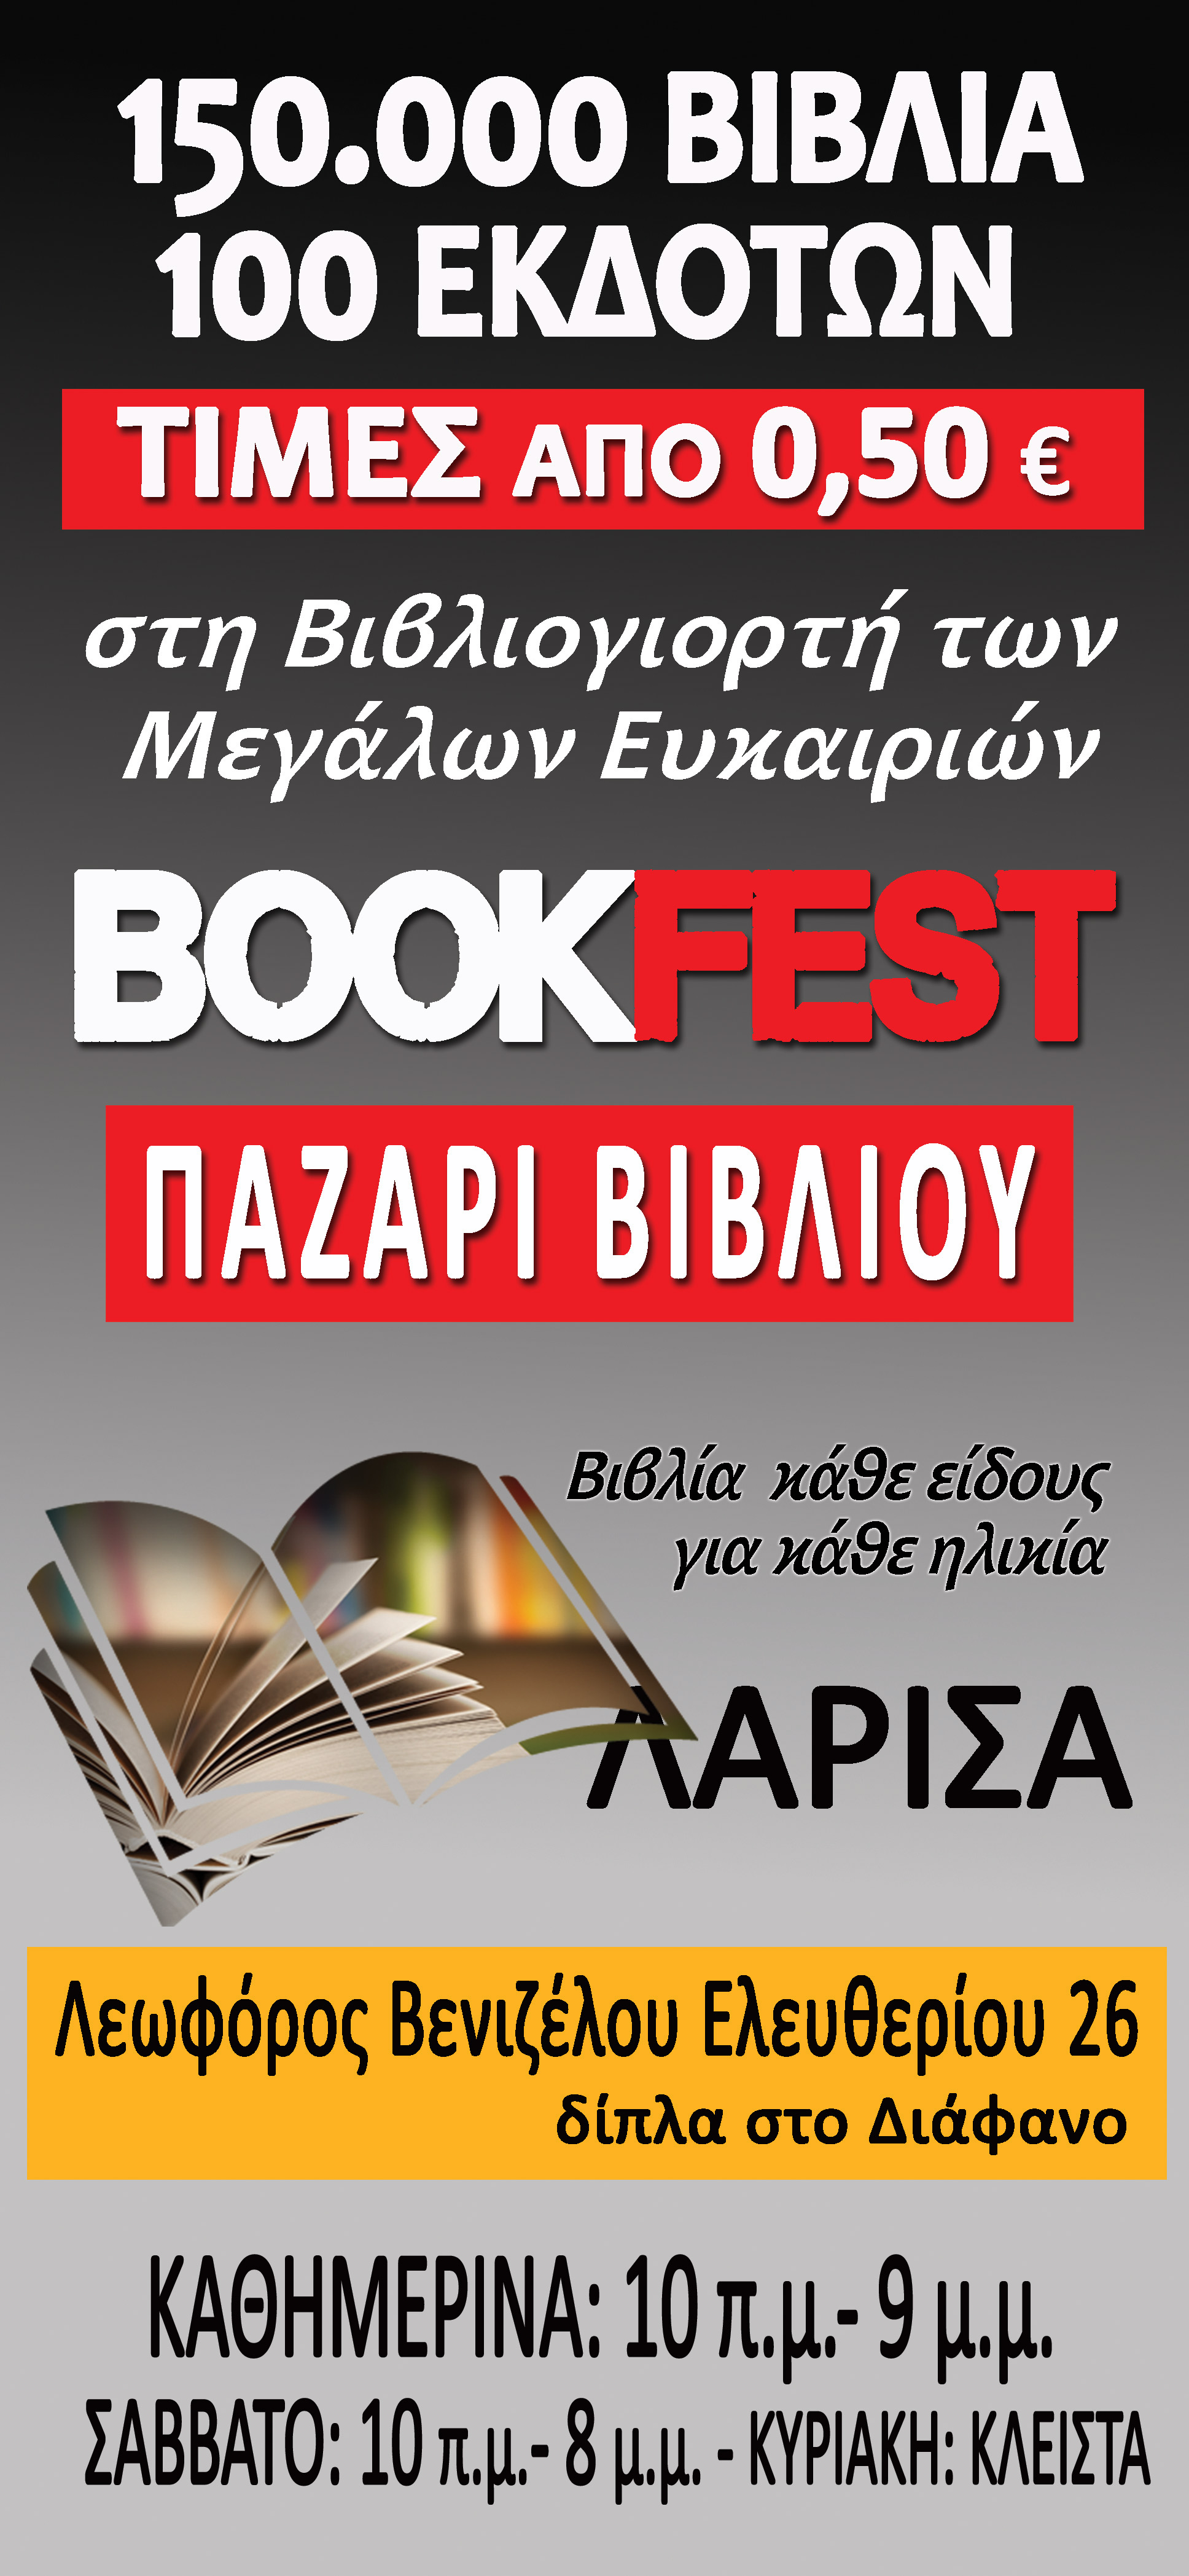 Ξεκινά το παζάρι βιβλίων Bookfest στη Λάρισα